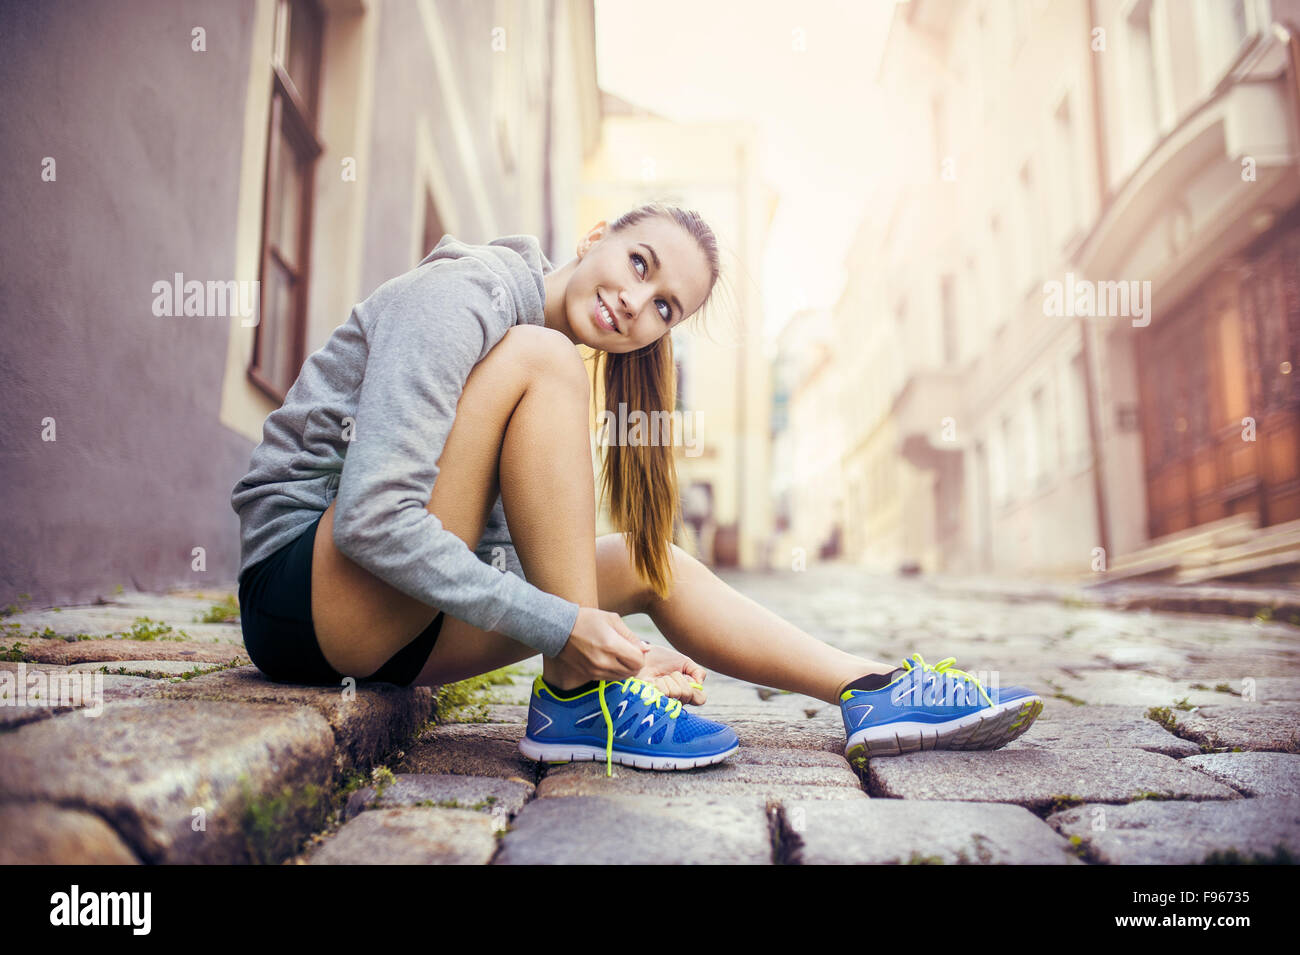 Junge weibliche Läufer ist ihre Laufschuhe auf gefliesten Bürgersteig im alten Stadtzentrum binden. Stockfoto